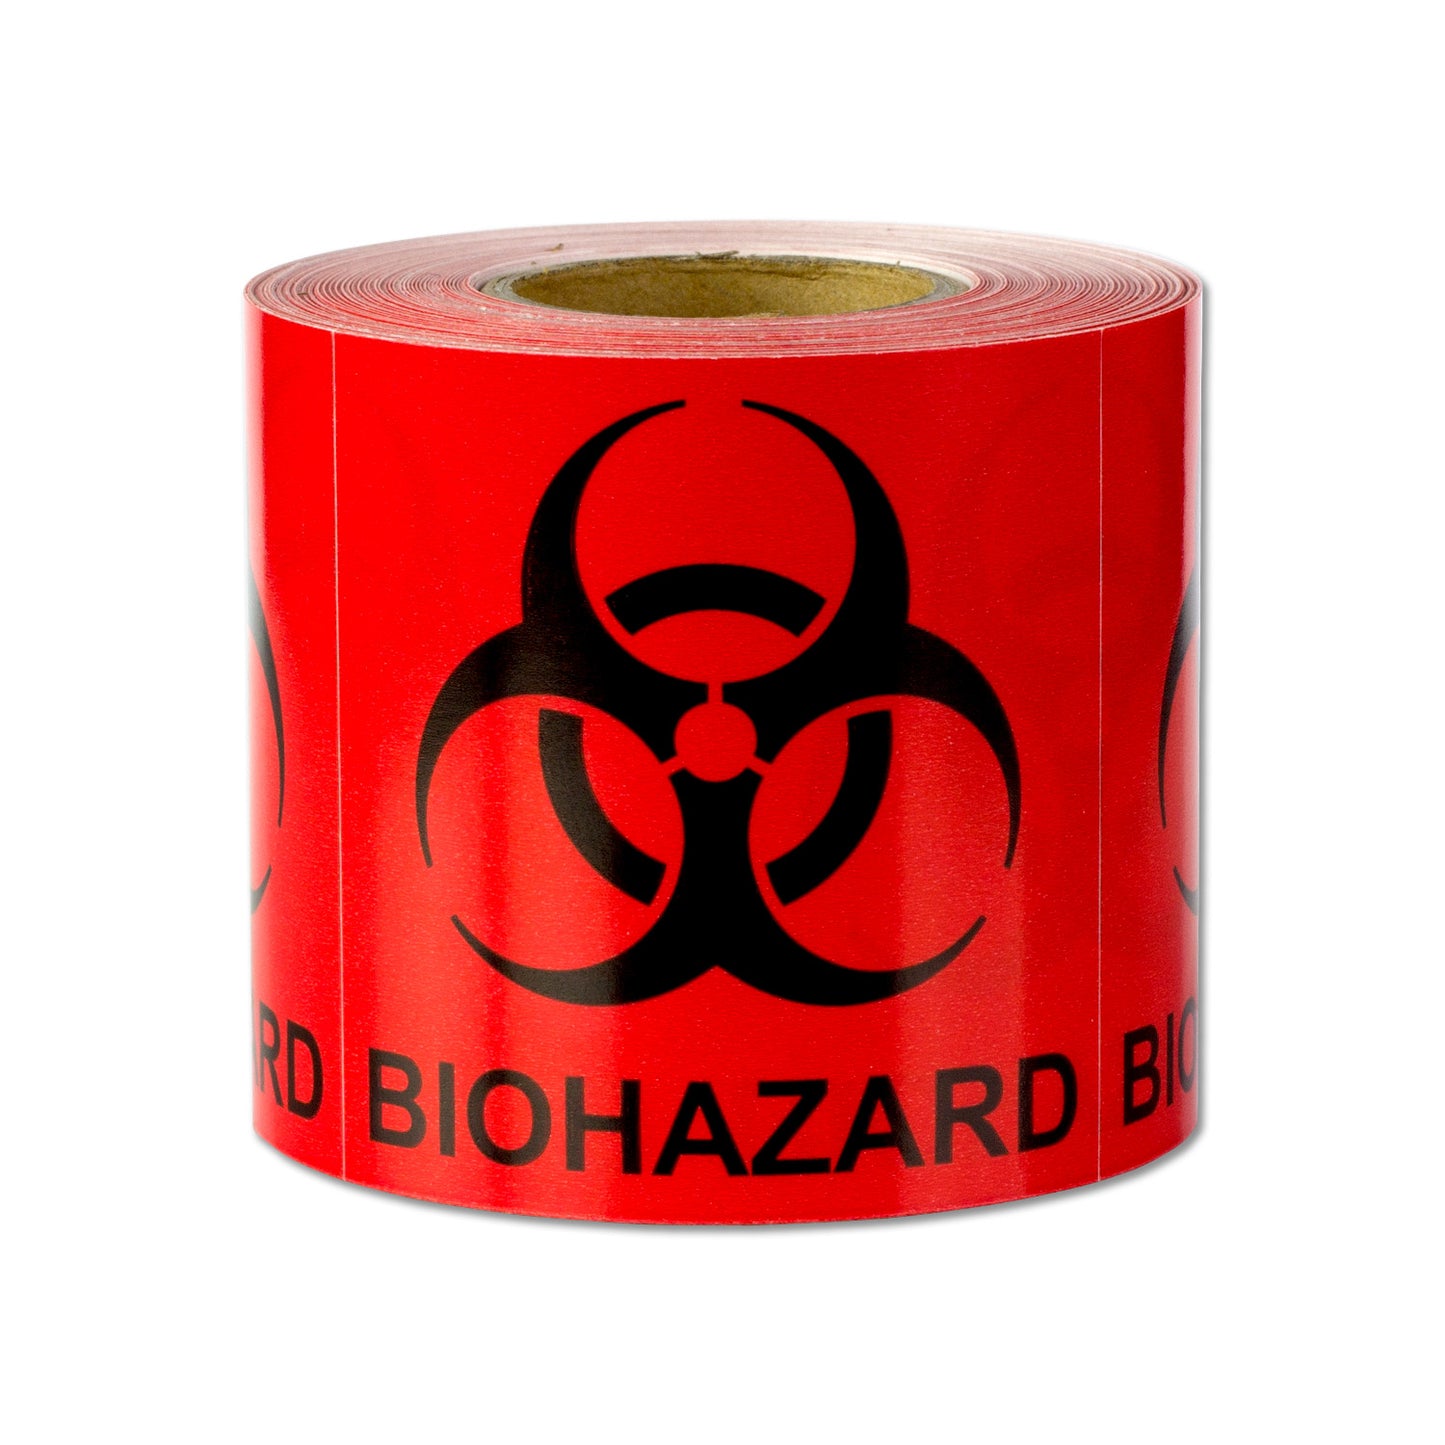 2 x 2 inch | D.O.T Biohazard Stickers